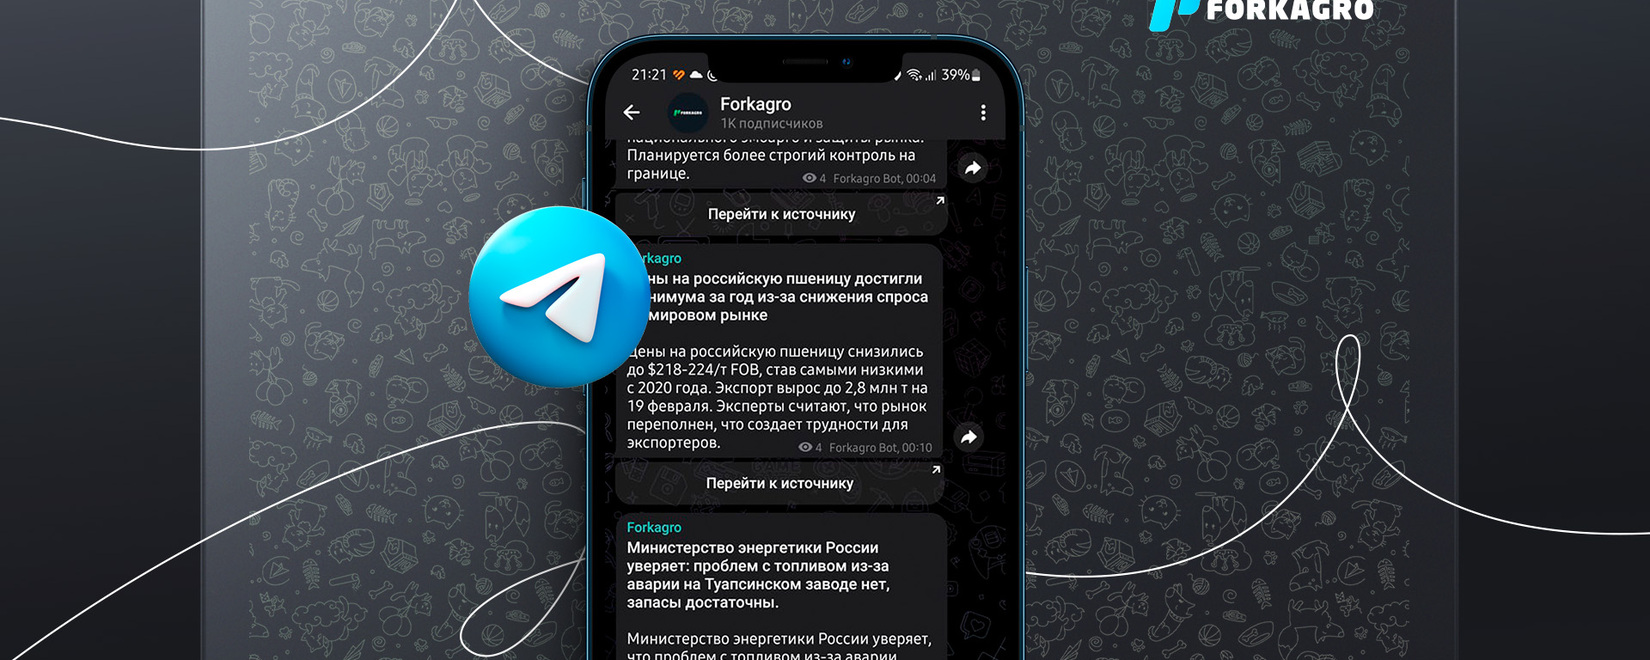 Forkagro теперь доступен в Telegram